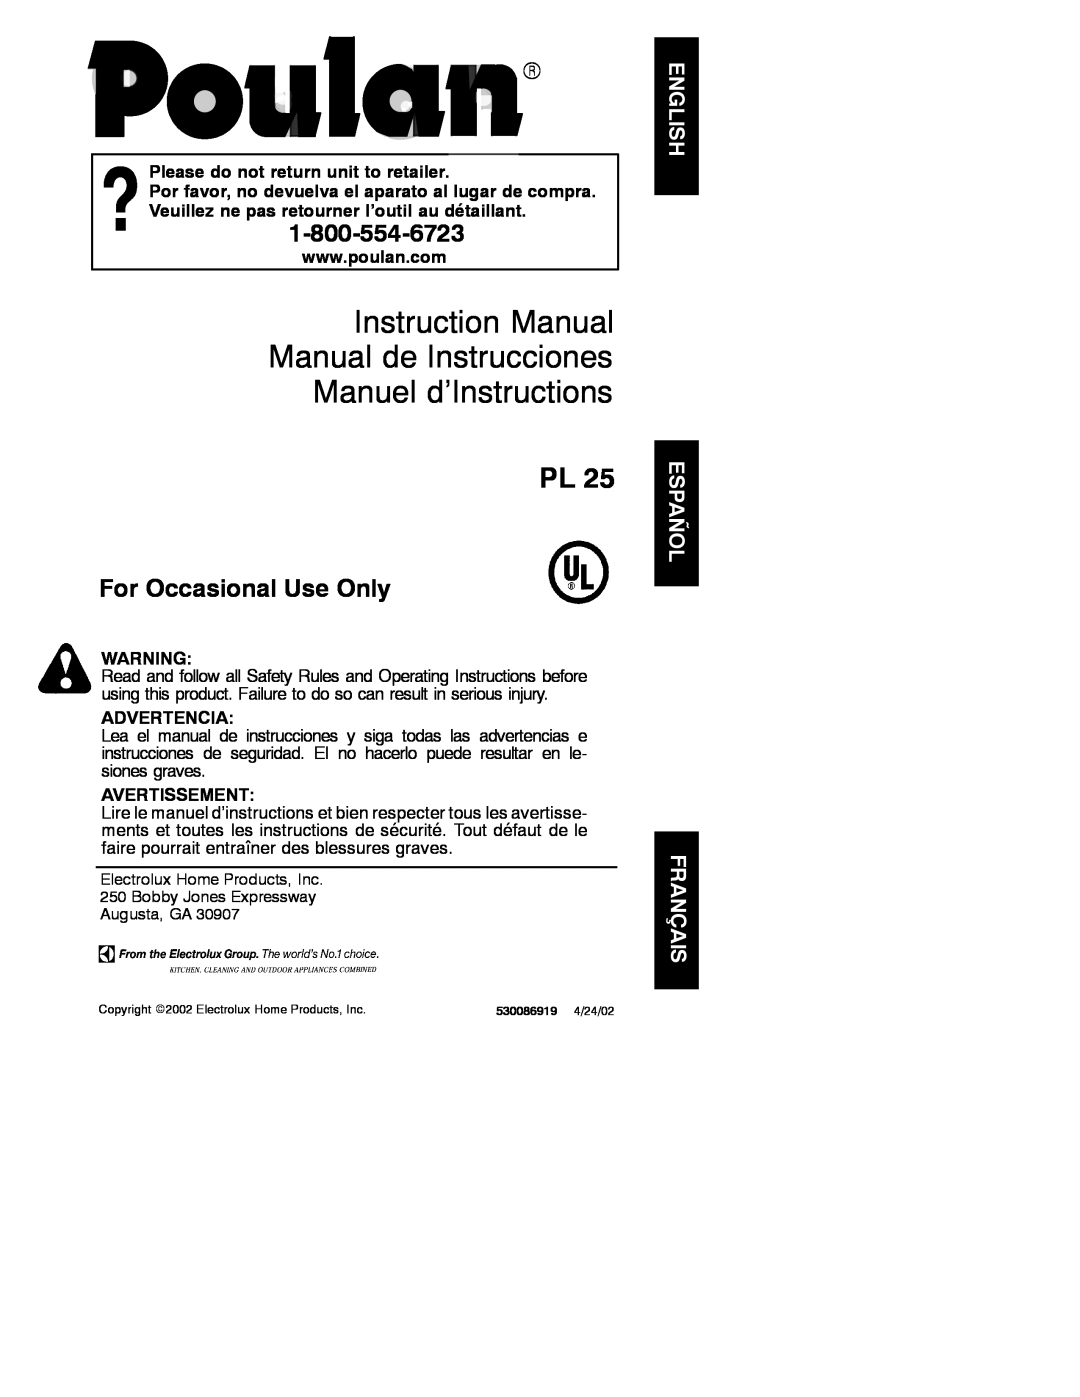 Poulan PL 25 instruction manual Please do not return unit to retailer, Advertencia, Avertissement, Manuel d’Instructions 